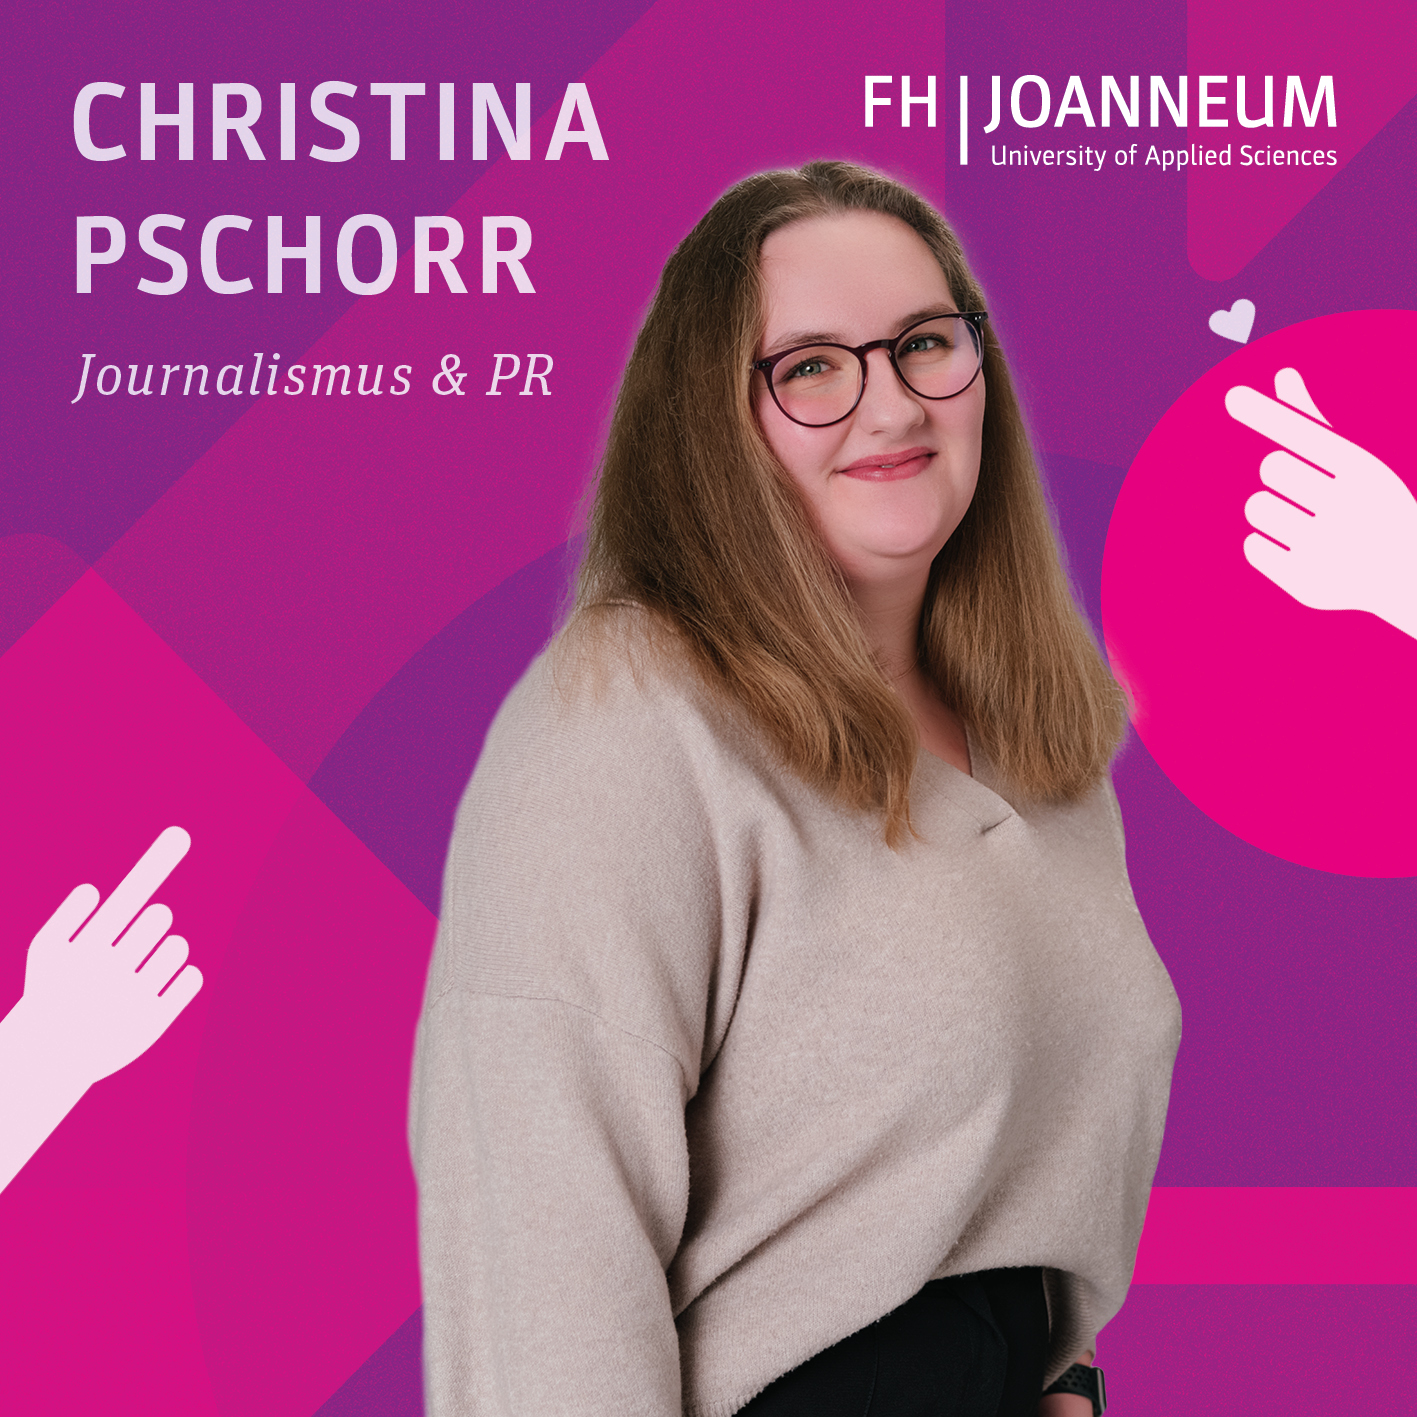 Christina Pschorr studiert Journalismus und Public Relations (PR).